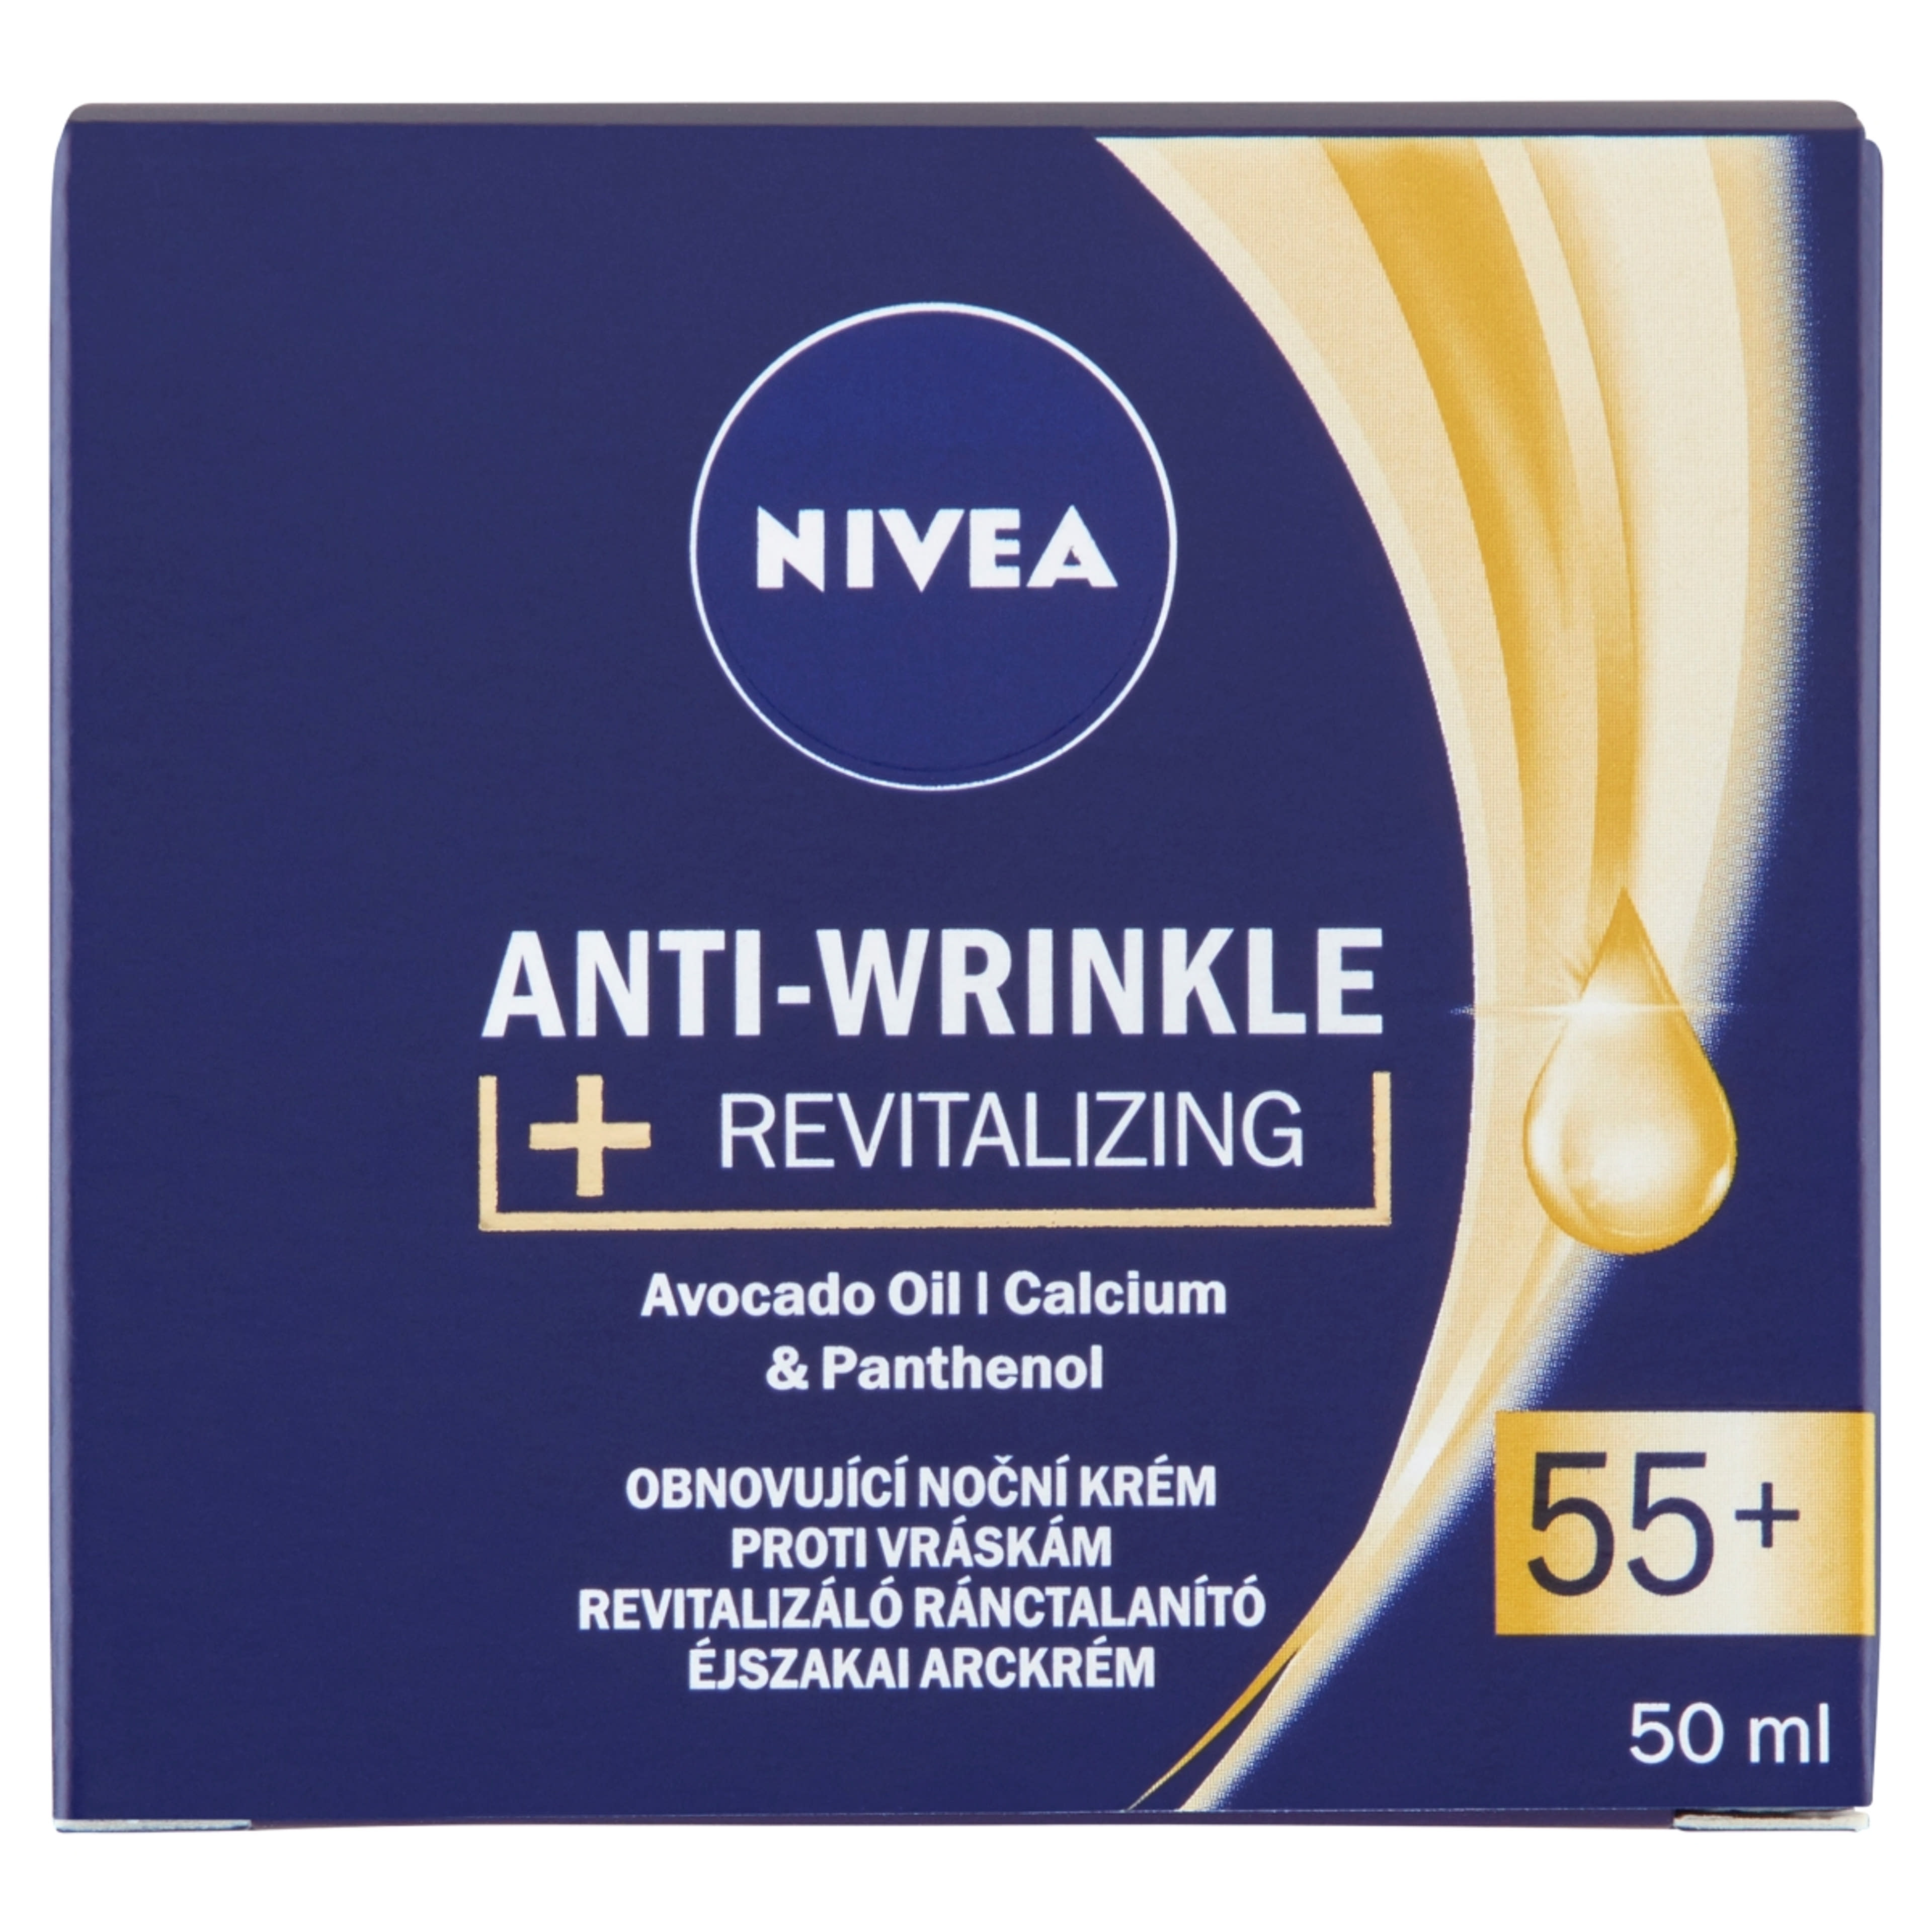 Nivea anti wrinkle 55+ éjszakai arckrém - 50 ml